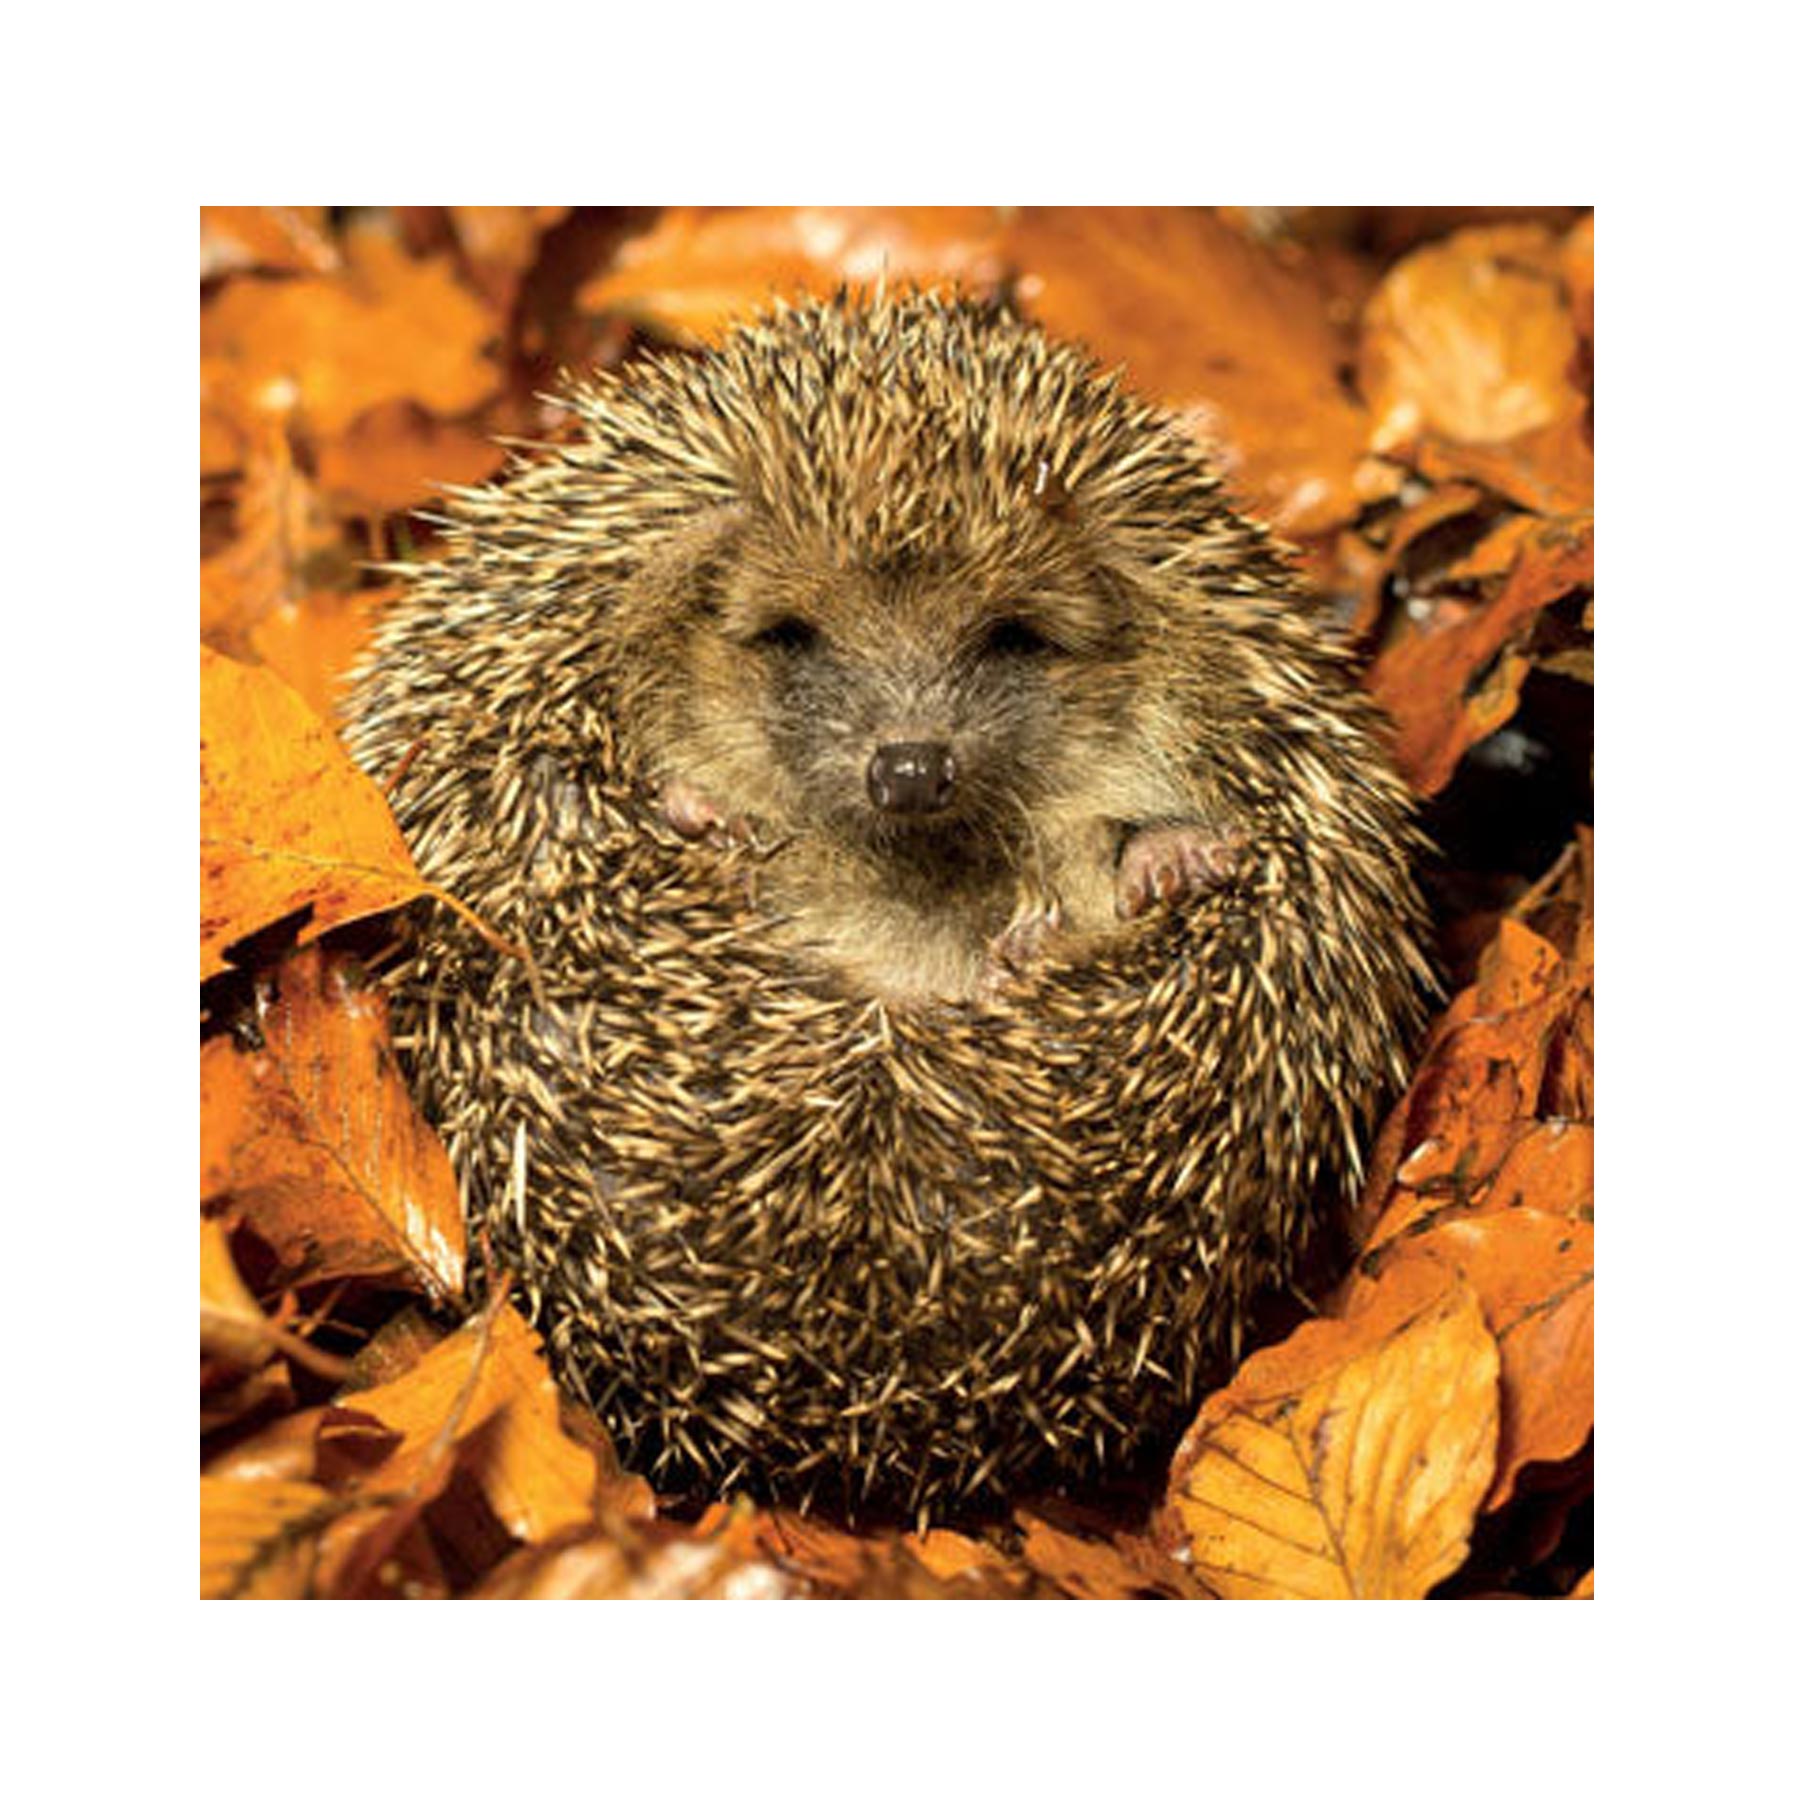 Cozy hedgehog greetings card